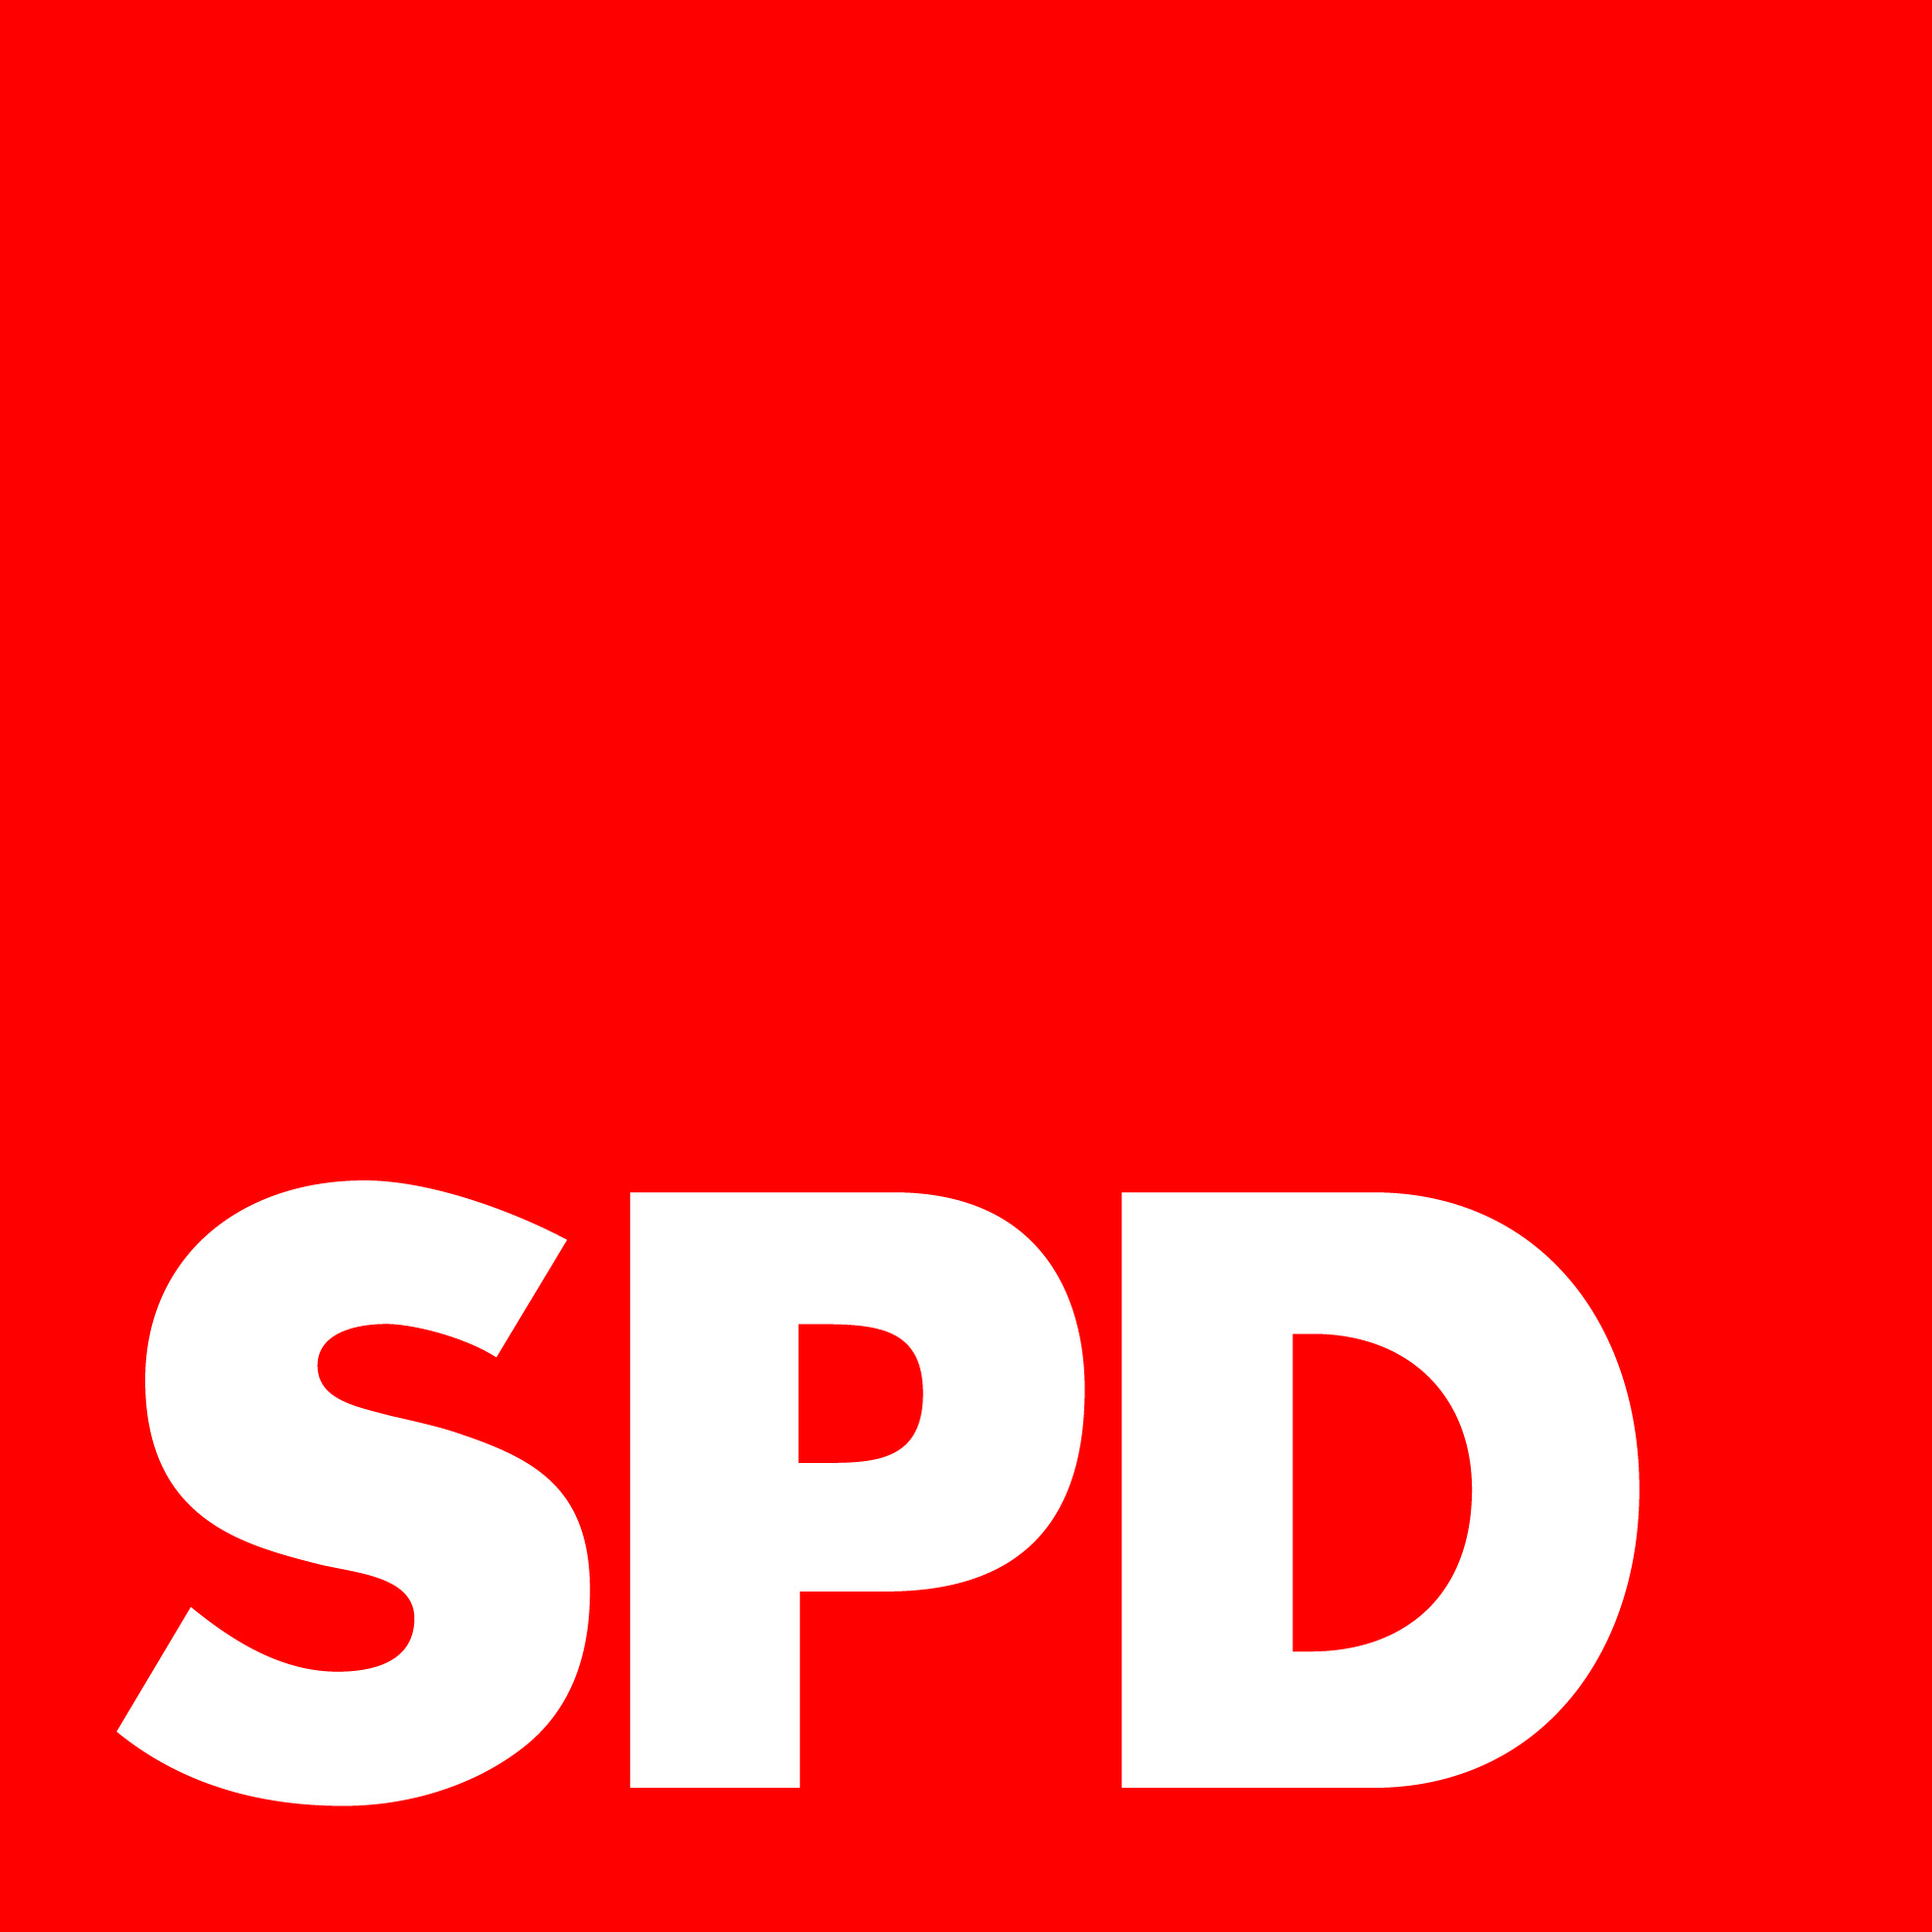 Auf dem Bild ist das Zeichen (Logo) der Partei SPD zu sehen